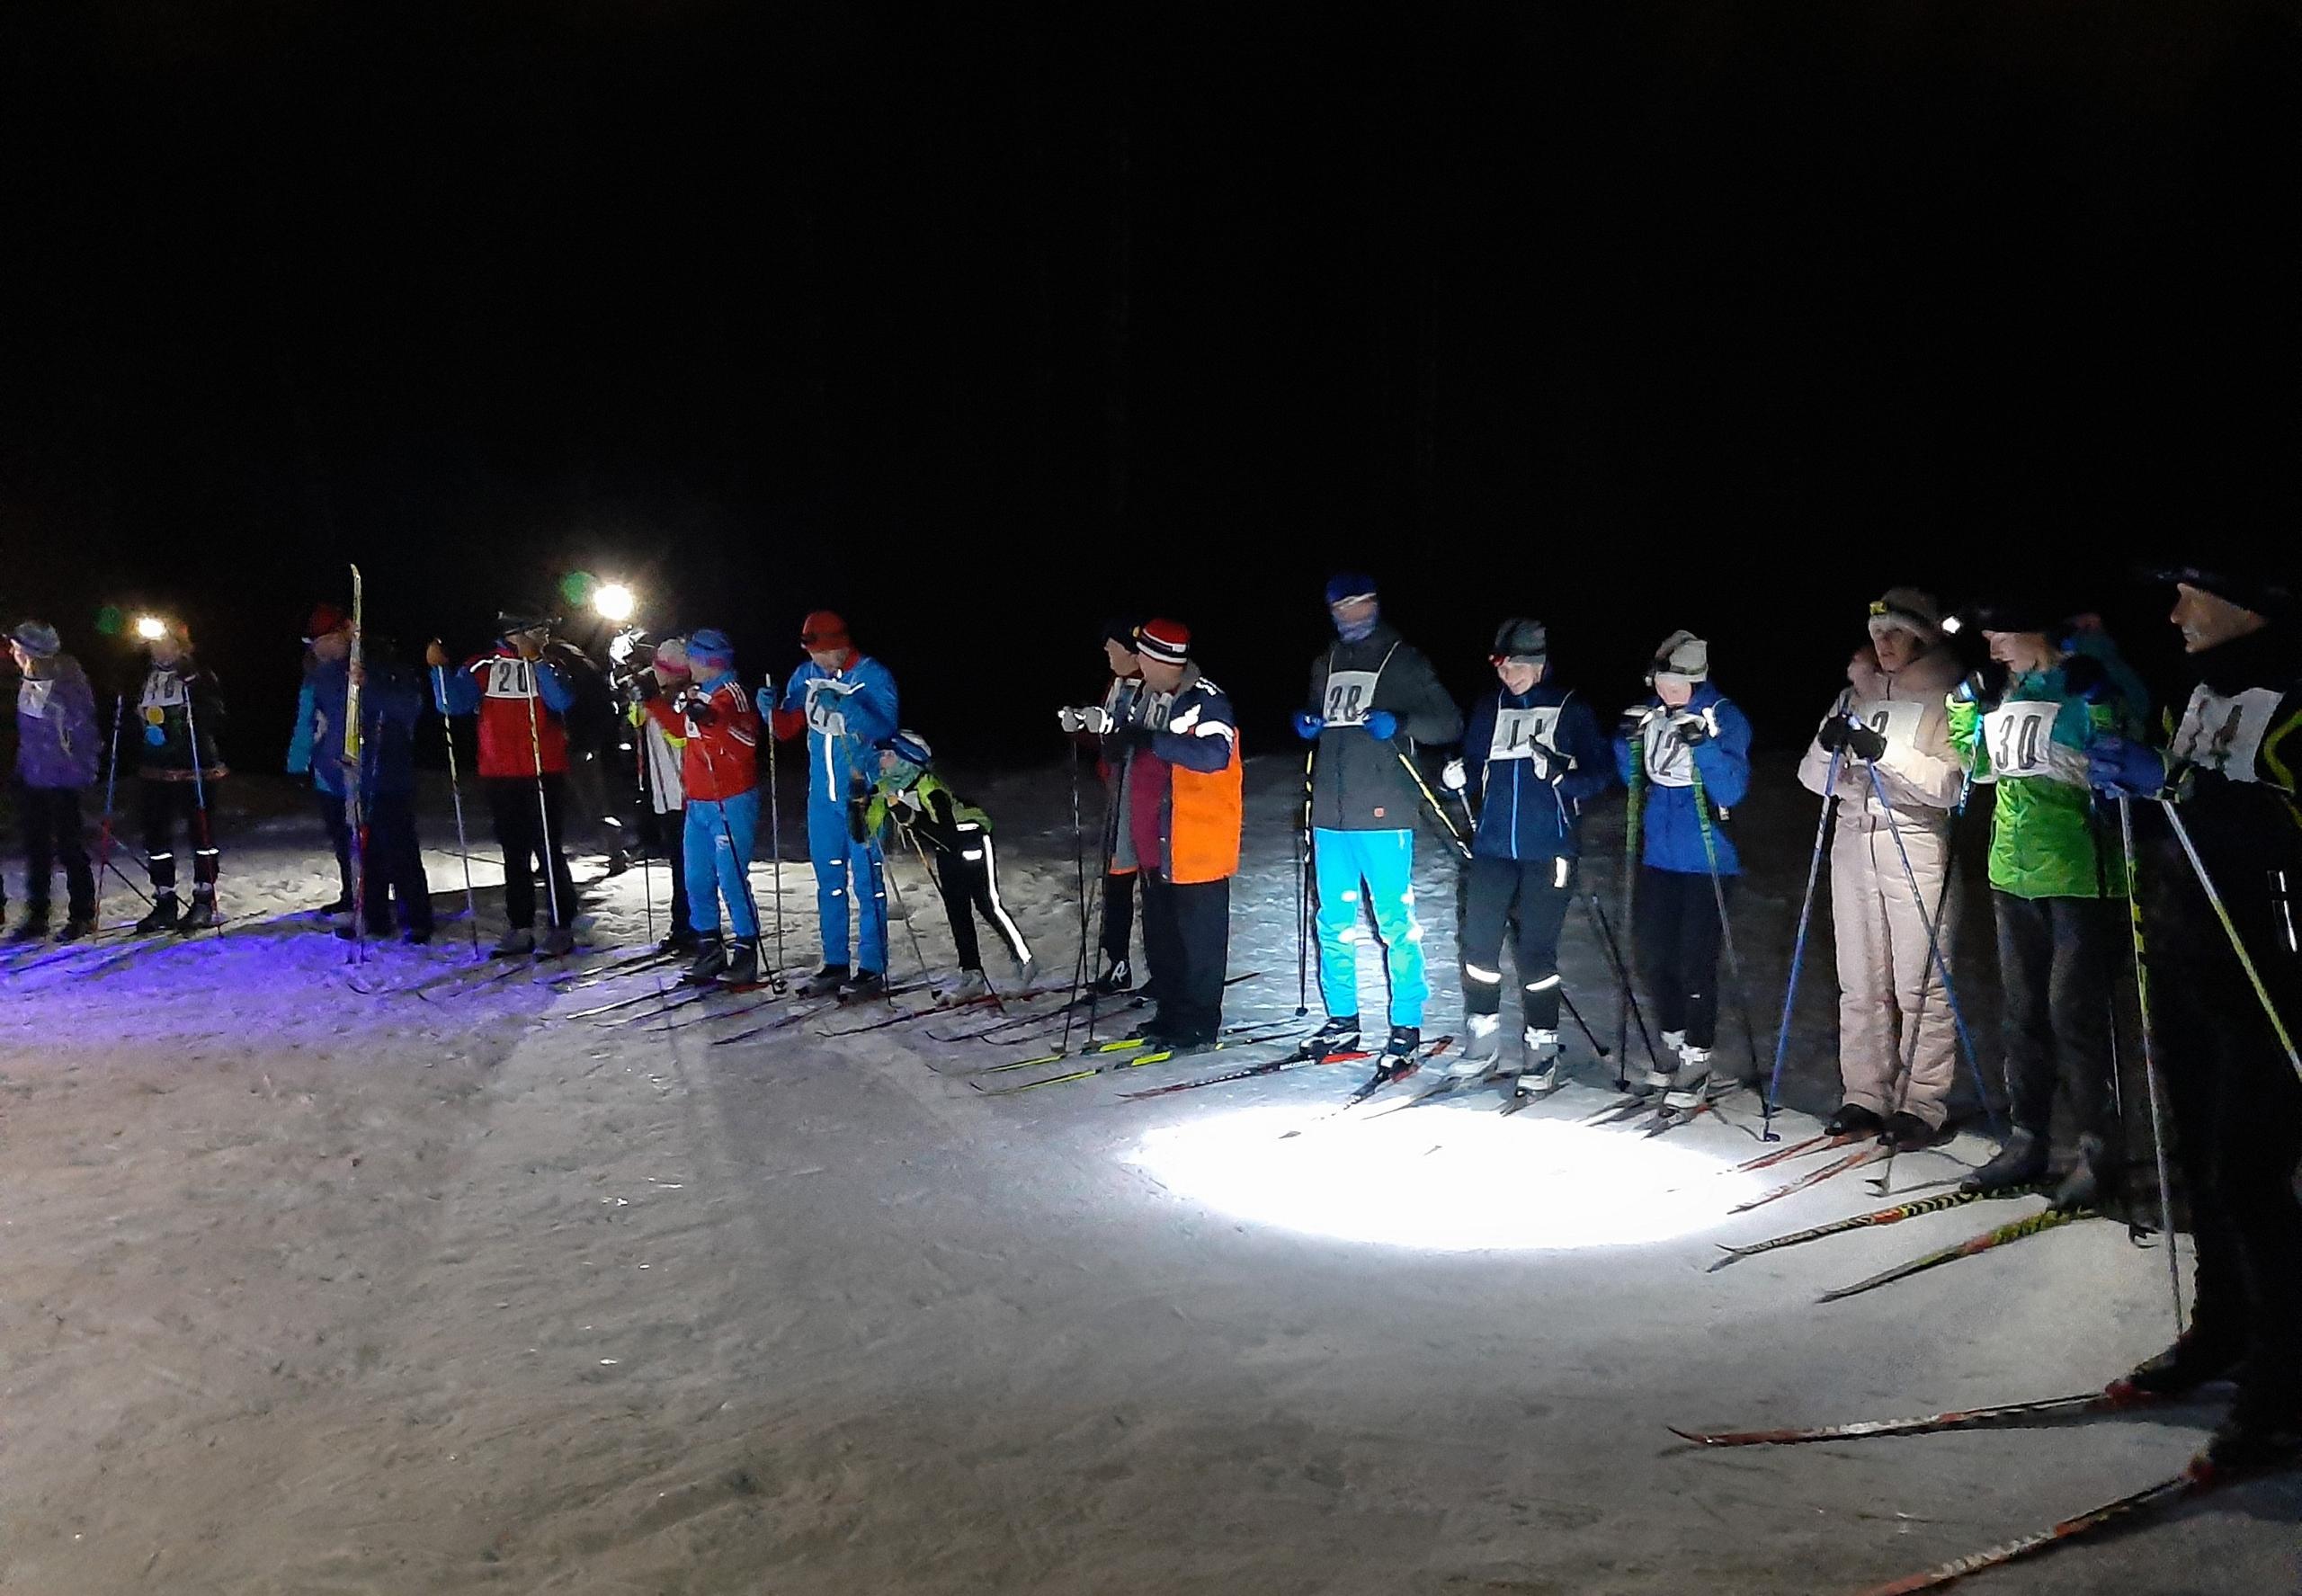 Belomorskin asukkaat juhlivat niin sanottua vanhaa uuttavuotta hiihtoladulla. Kuva: Belomorskin puhujalava -lehteen Vkontakte-sivu